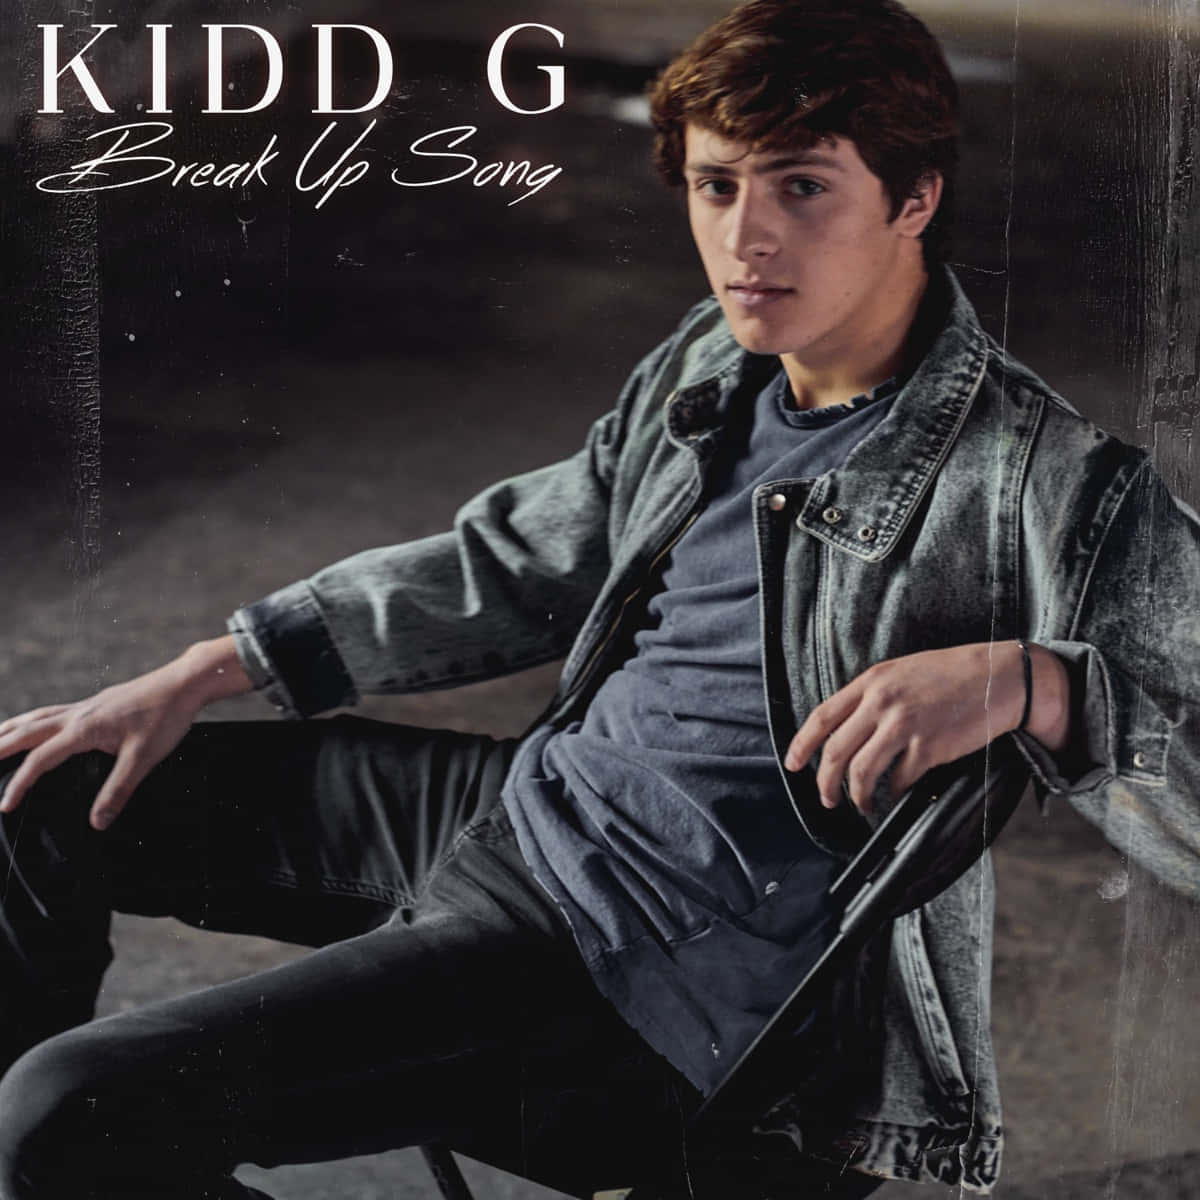 Kidd G Break Up Song Album Cover Wallpaper